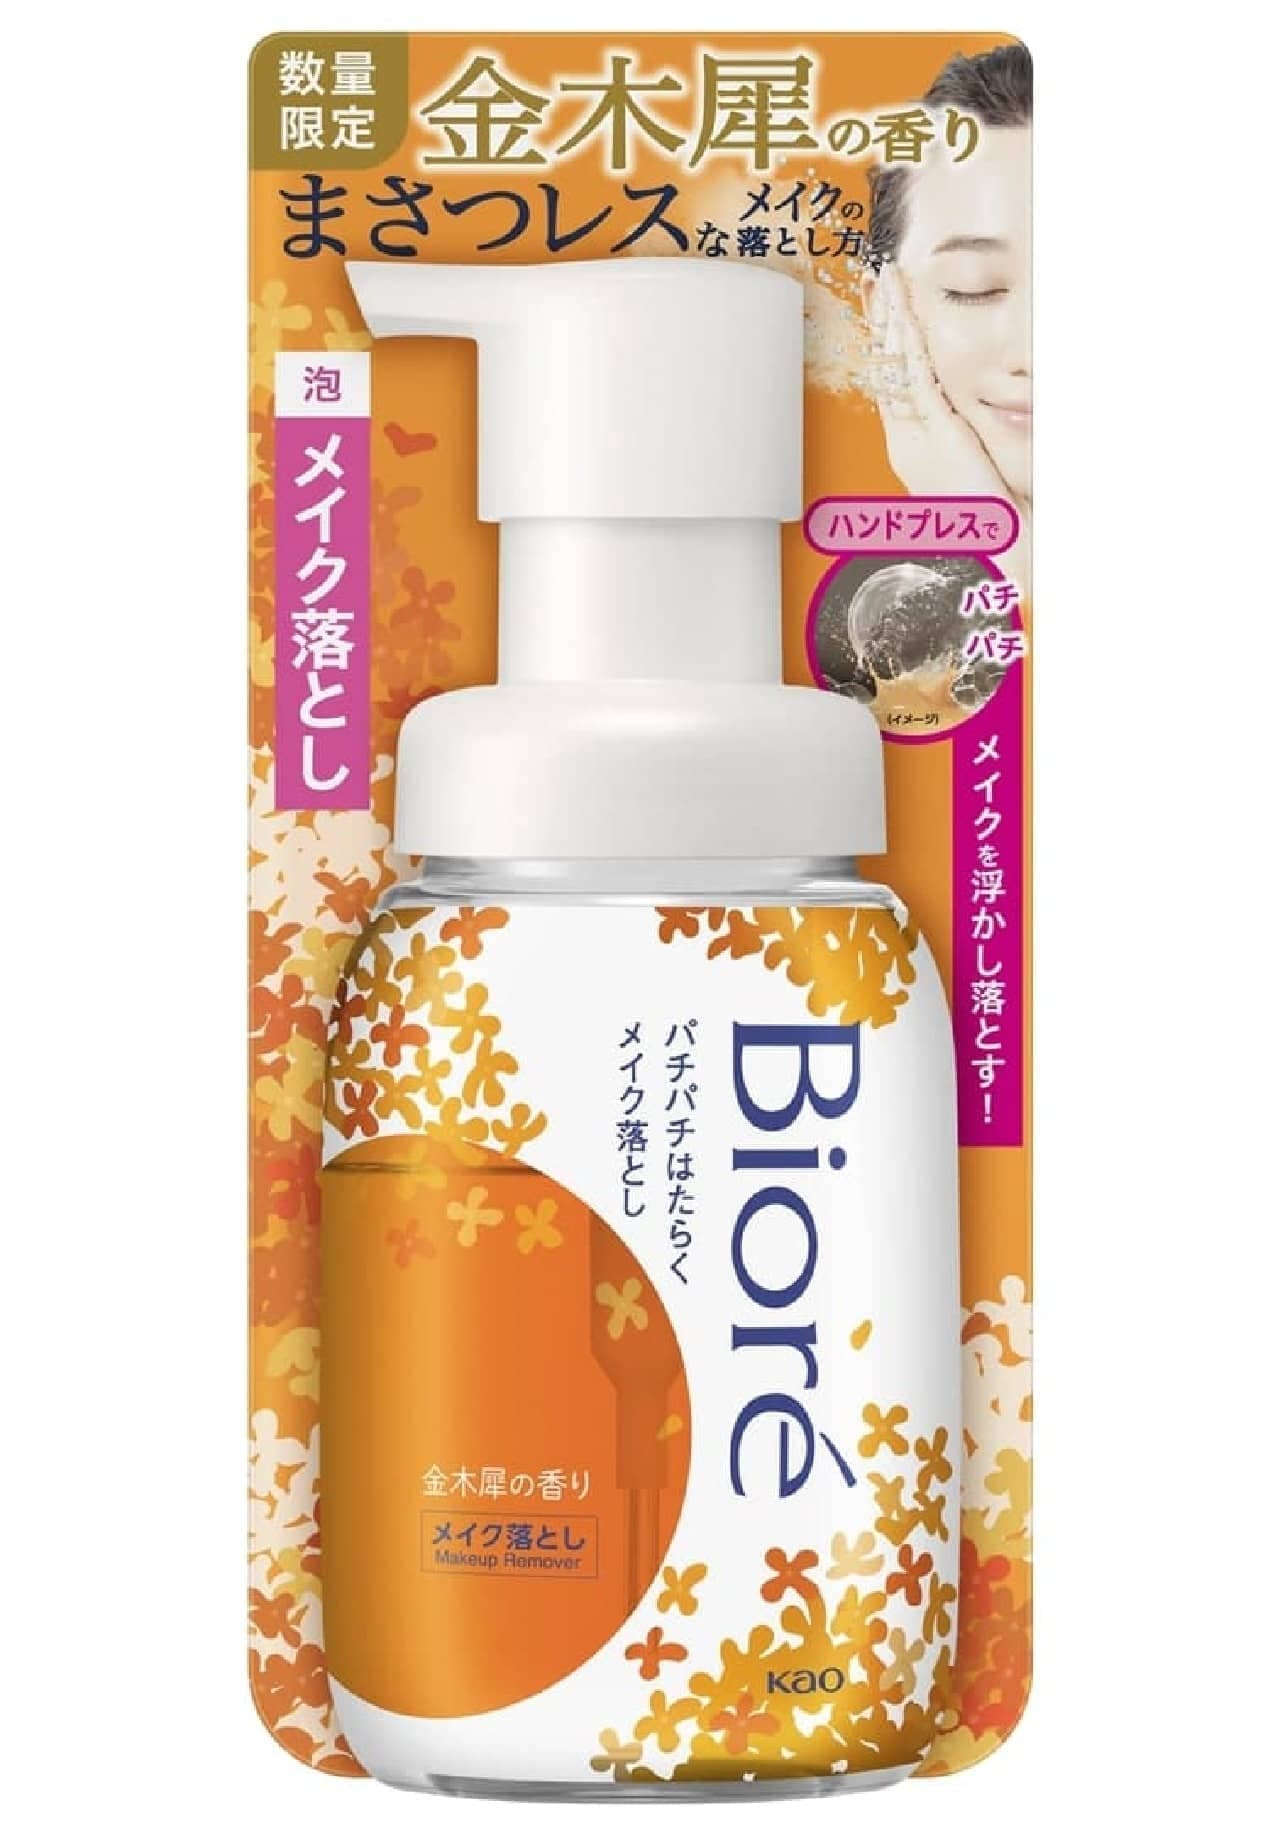 Biore Crackling Makeup Remover, Kinmokusei Fragrance